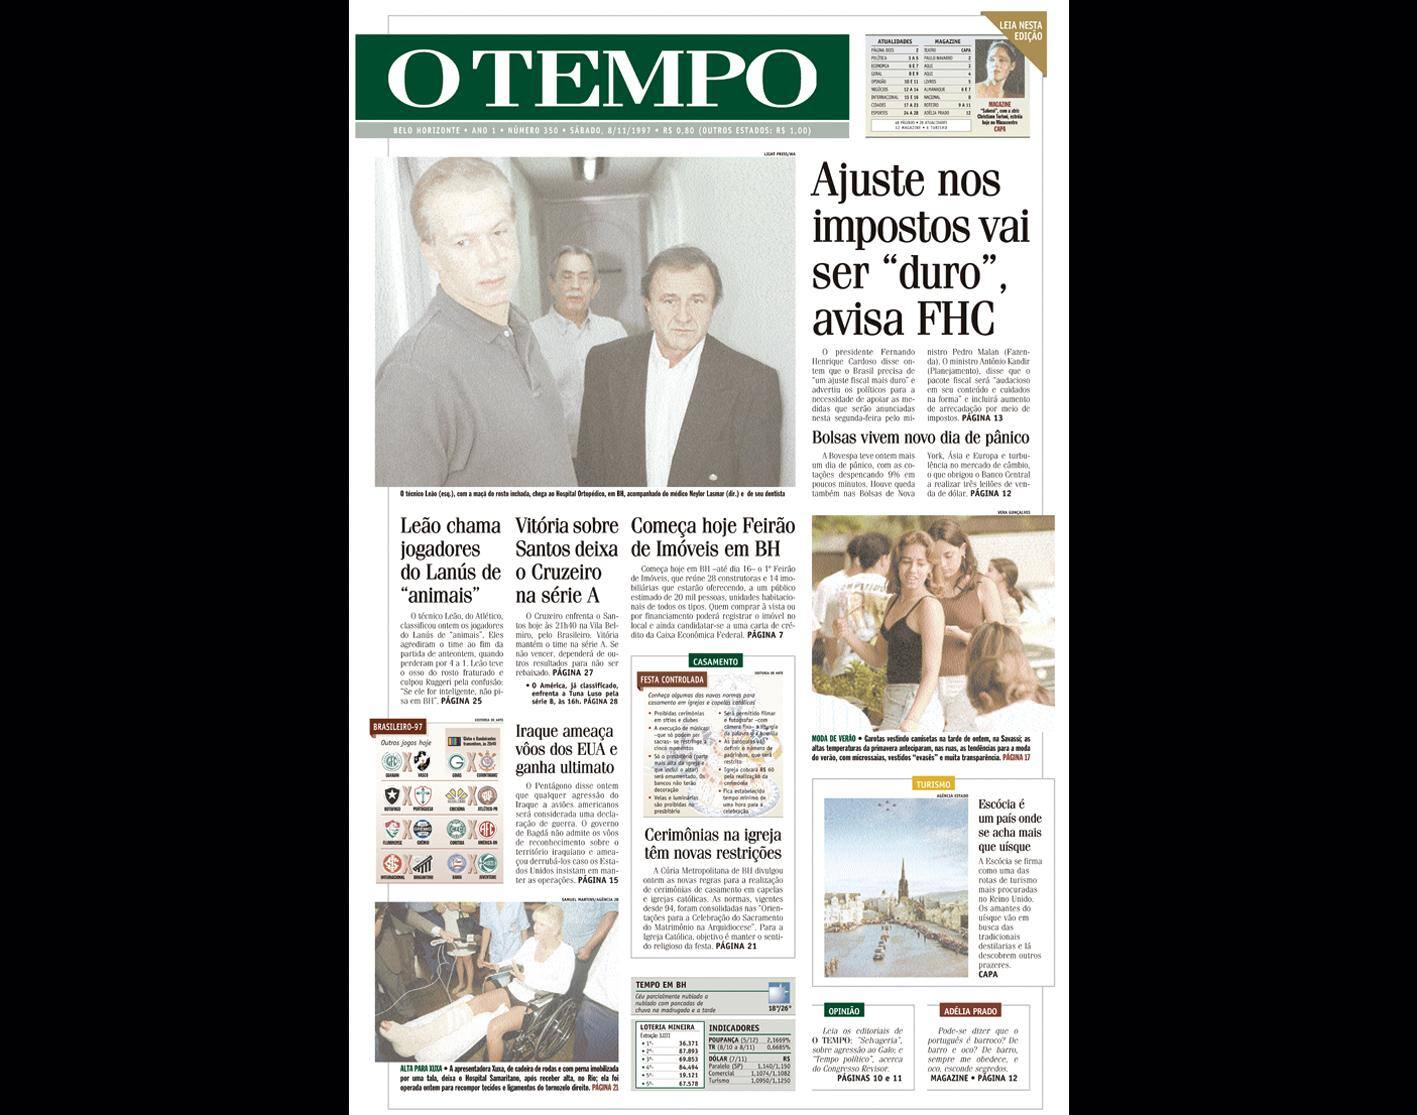 Capa do jornal O TEMPO no dia 8.11.1997; resgate do acervo marca as comemorações dos 25 anos da publicação